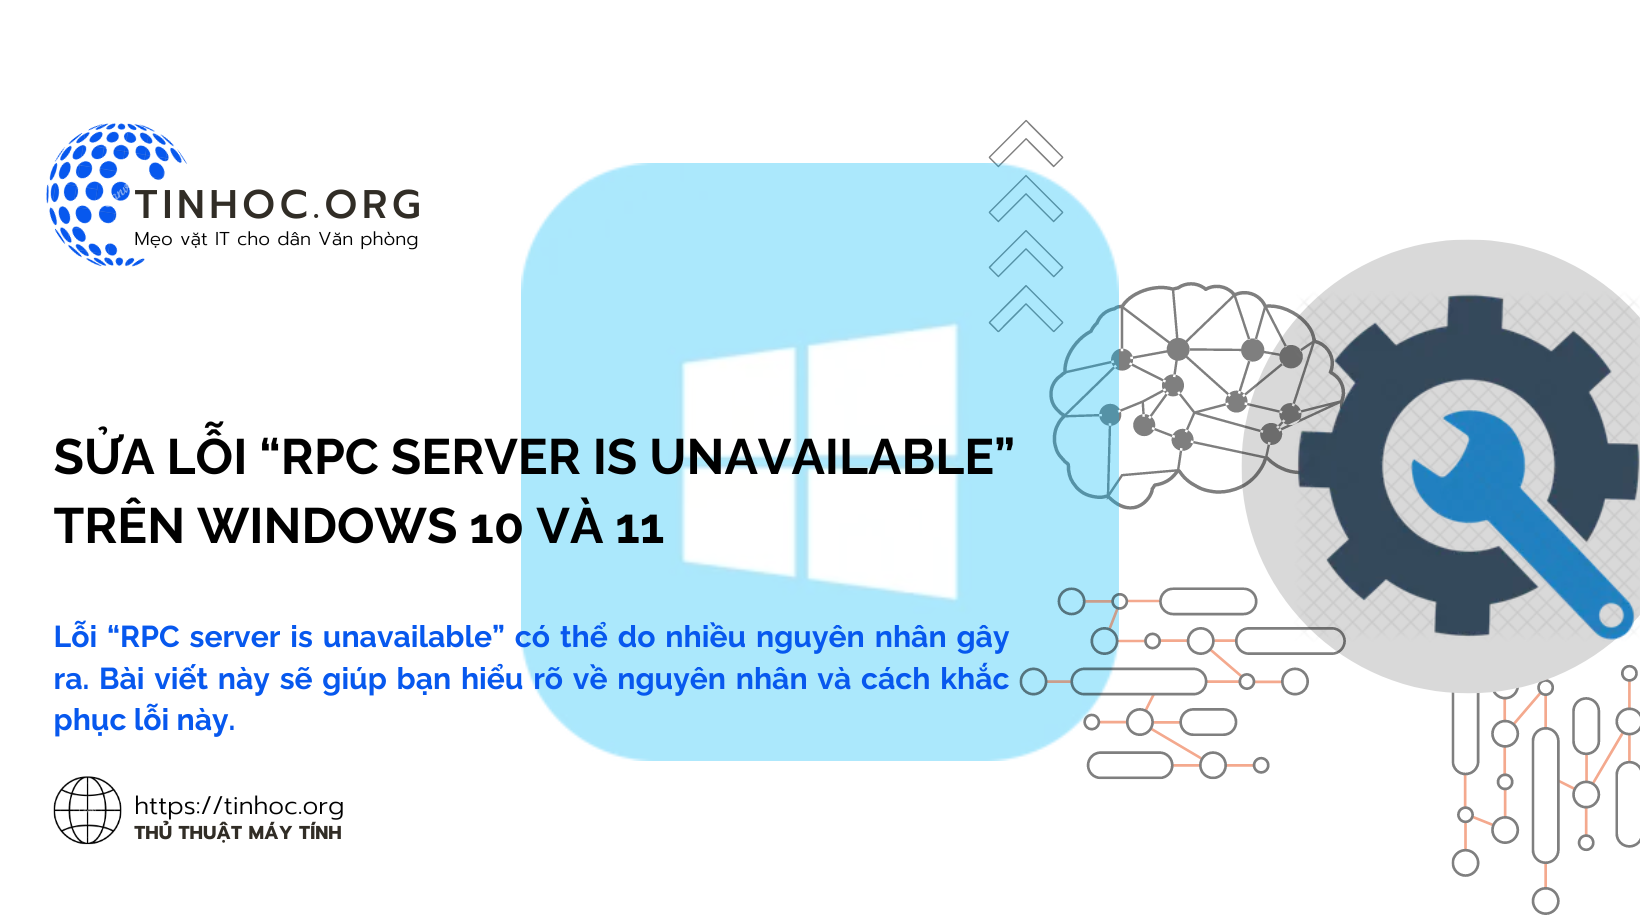 Lỗi “RPC server is unavailable” có thể do nhiều nguyên nhân gây ra. Bài viết này sẽ giúp bạn hiểu rõ về nguyên nhân và cách khắc phục lỗi này.